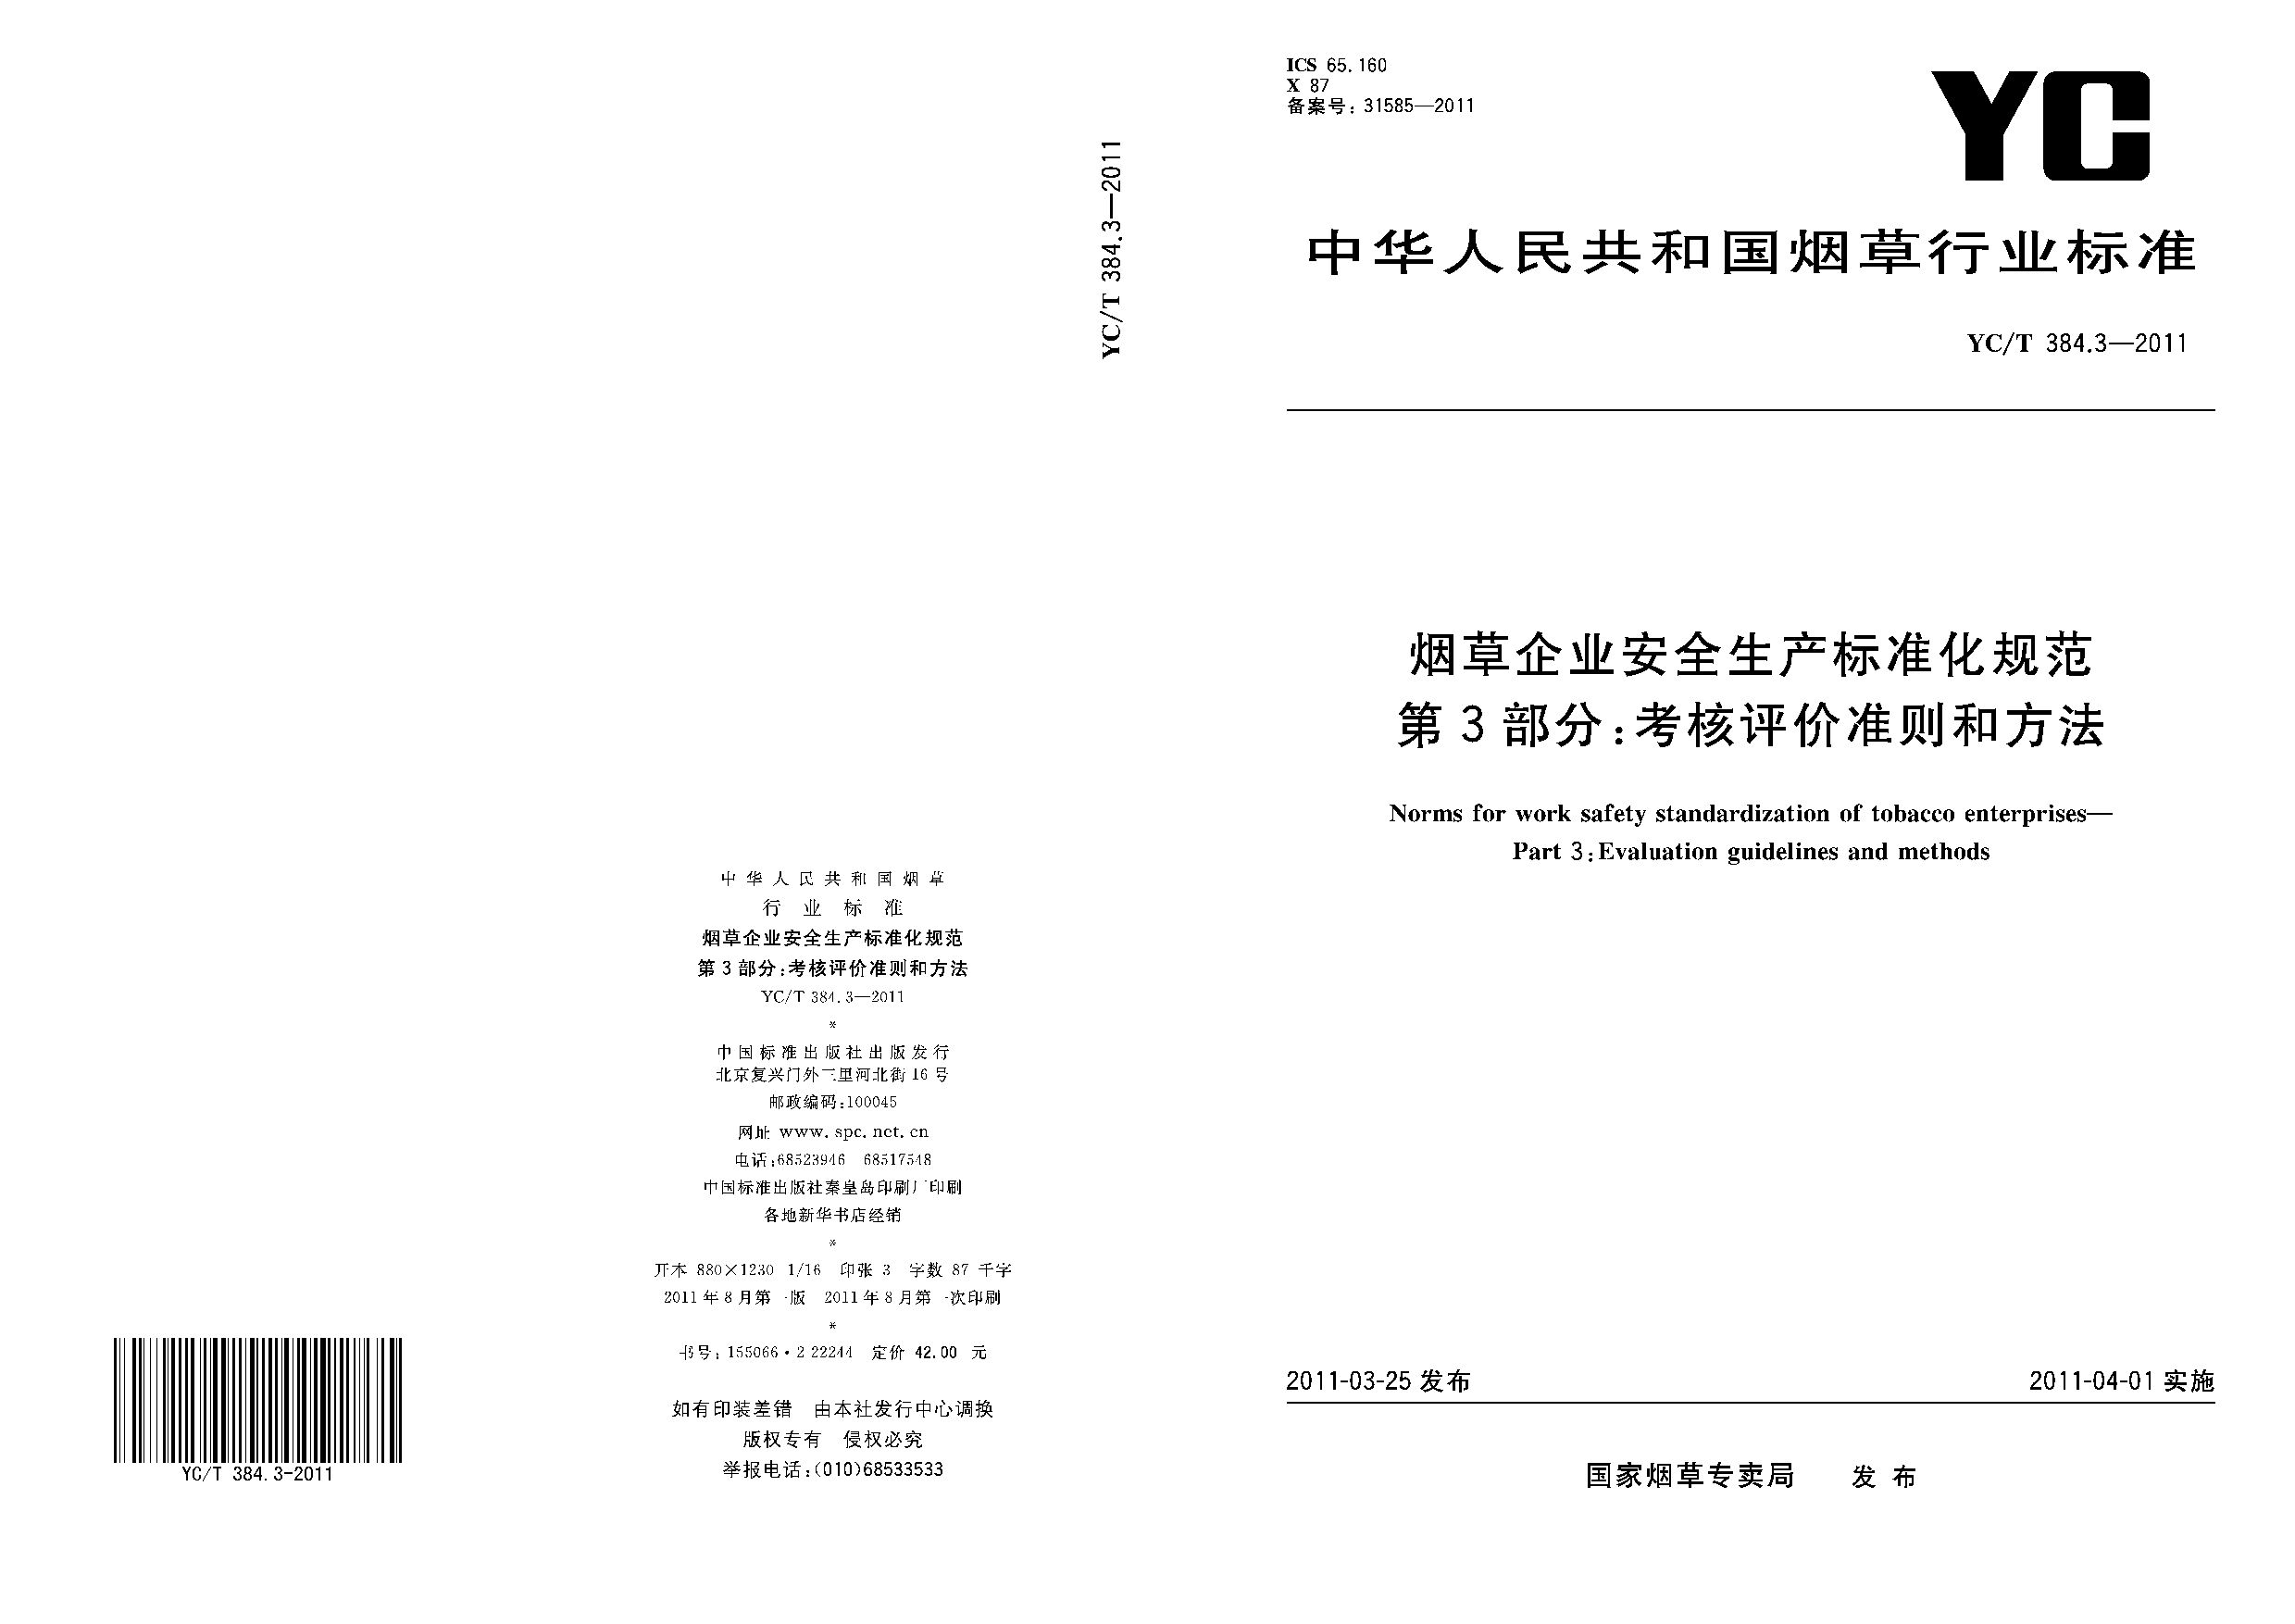 YC/T 384.3-2011封面图